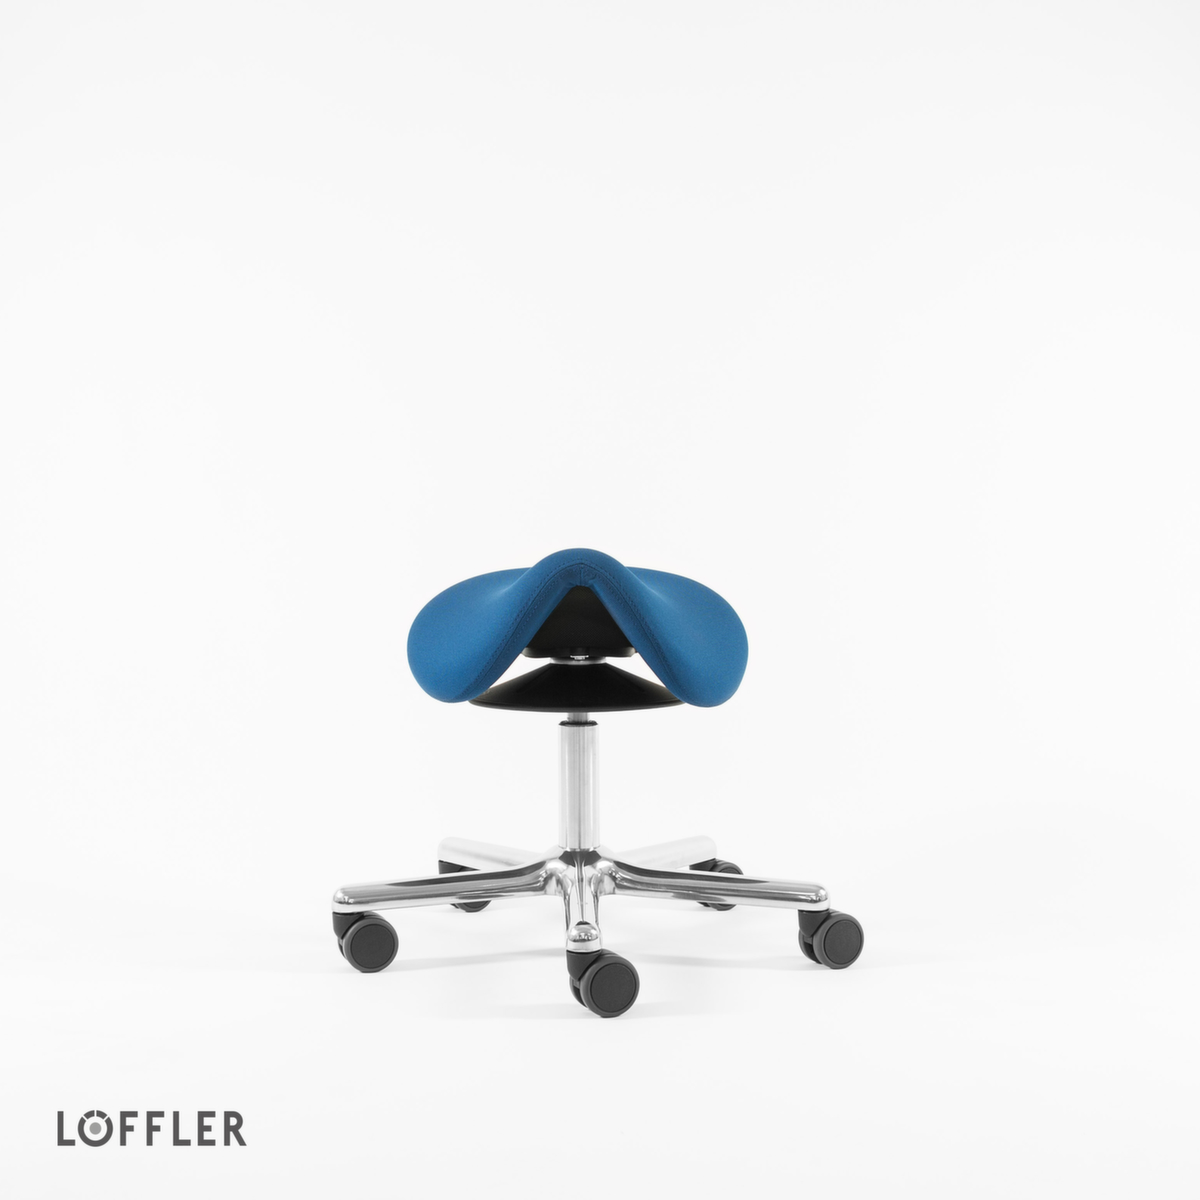 Löffler Sattelsitzhocker Sedlo mit Höhenverstellung, Sitz blau, Rollen Artikel ähnlich 1 ZOOM